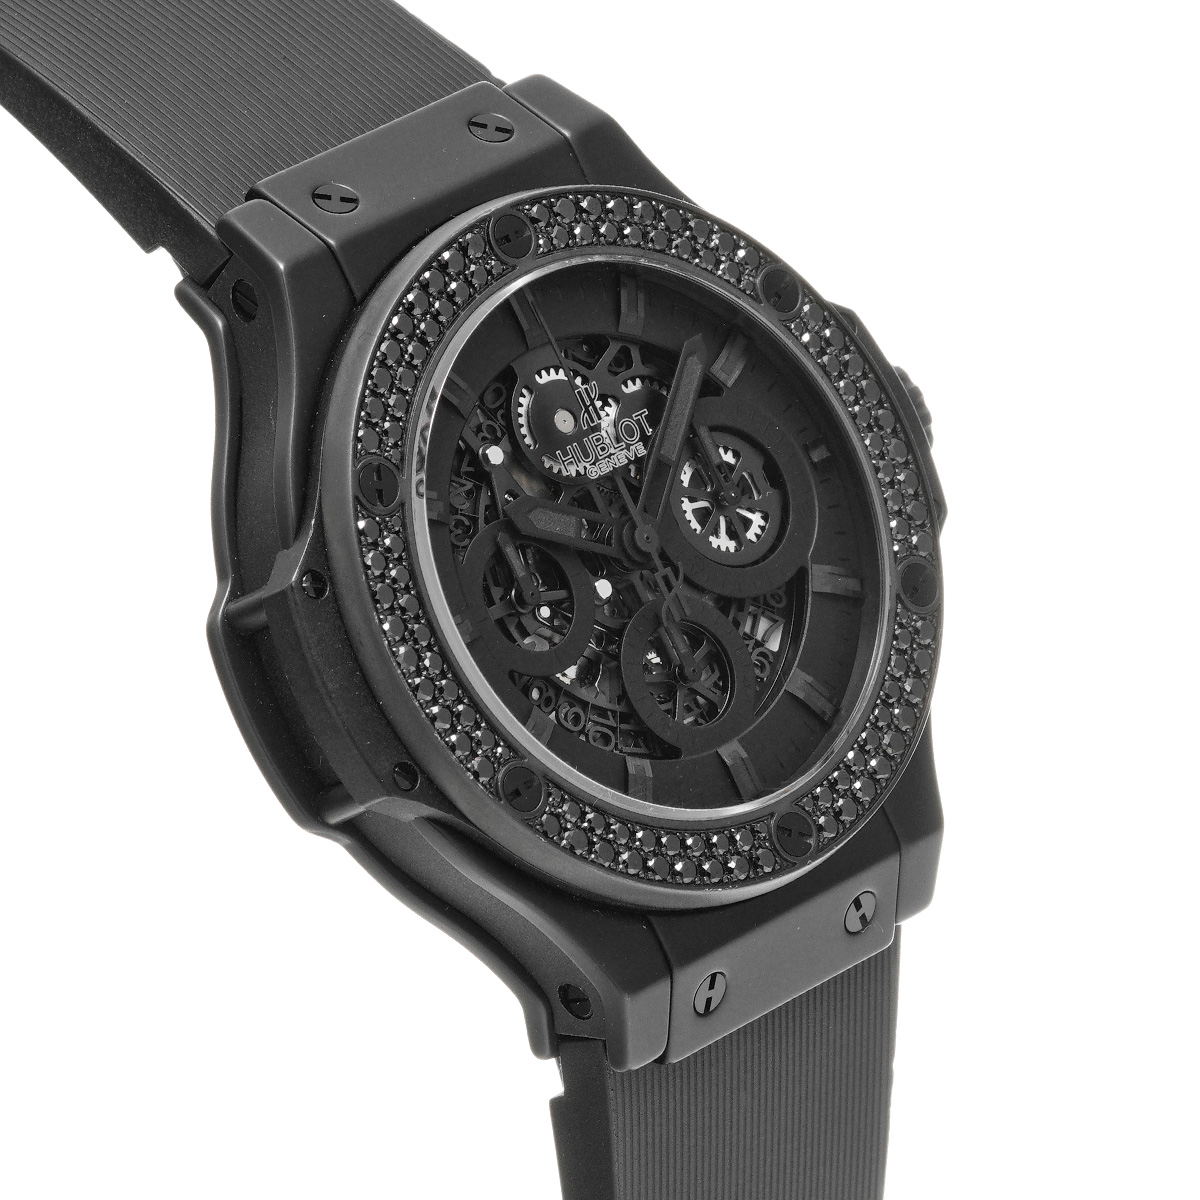 HUBLOT ウブロ  ビッグバン アエロバン オールブラック クロノ  310.CV.1110.RX.1100  ブラックダイヤモンド  メンズ 腕時計